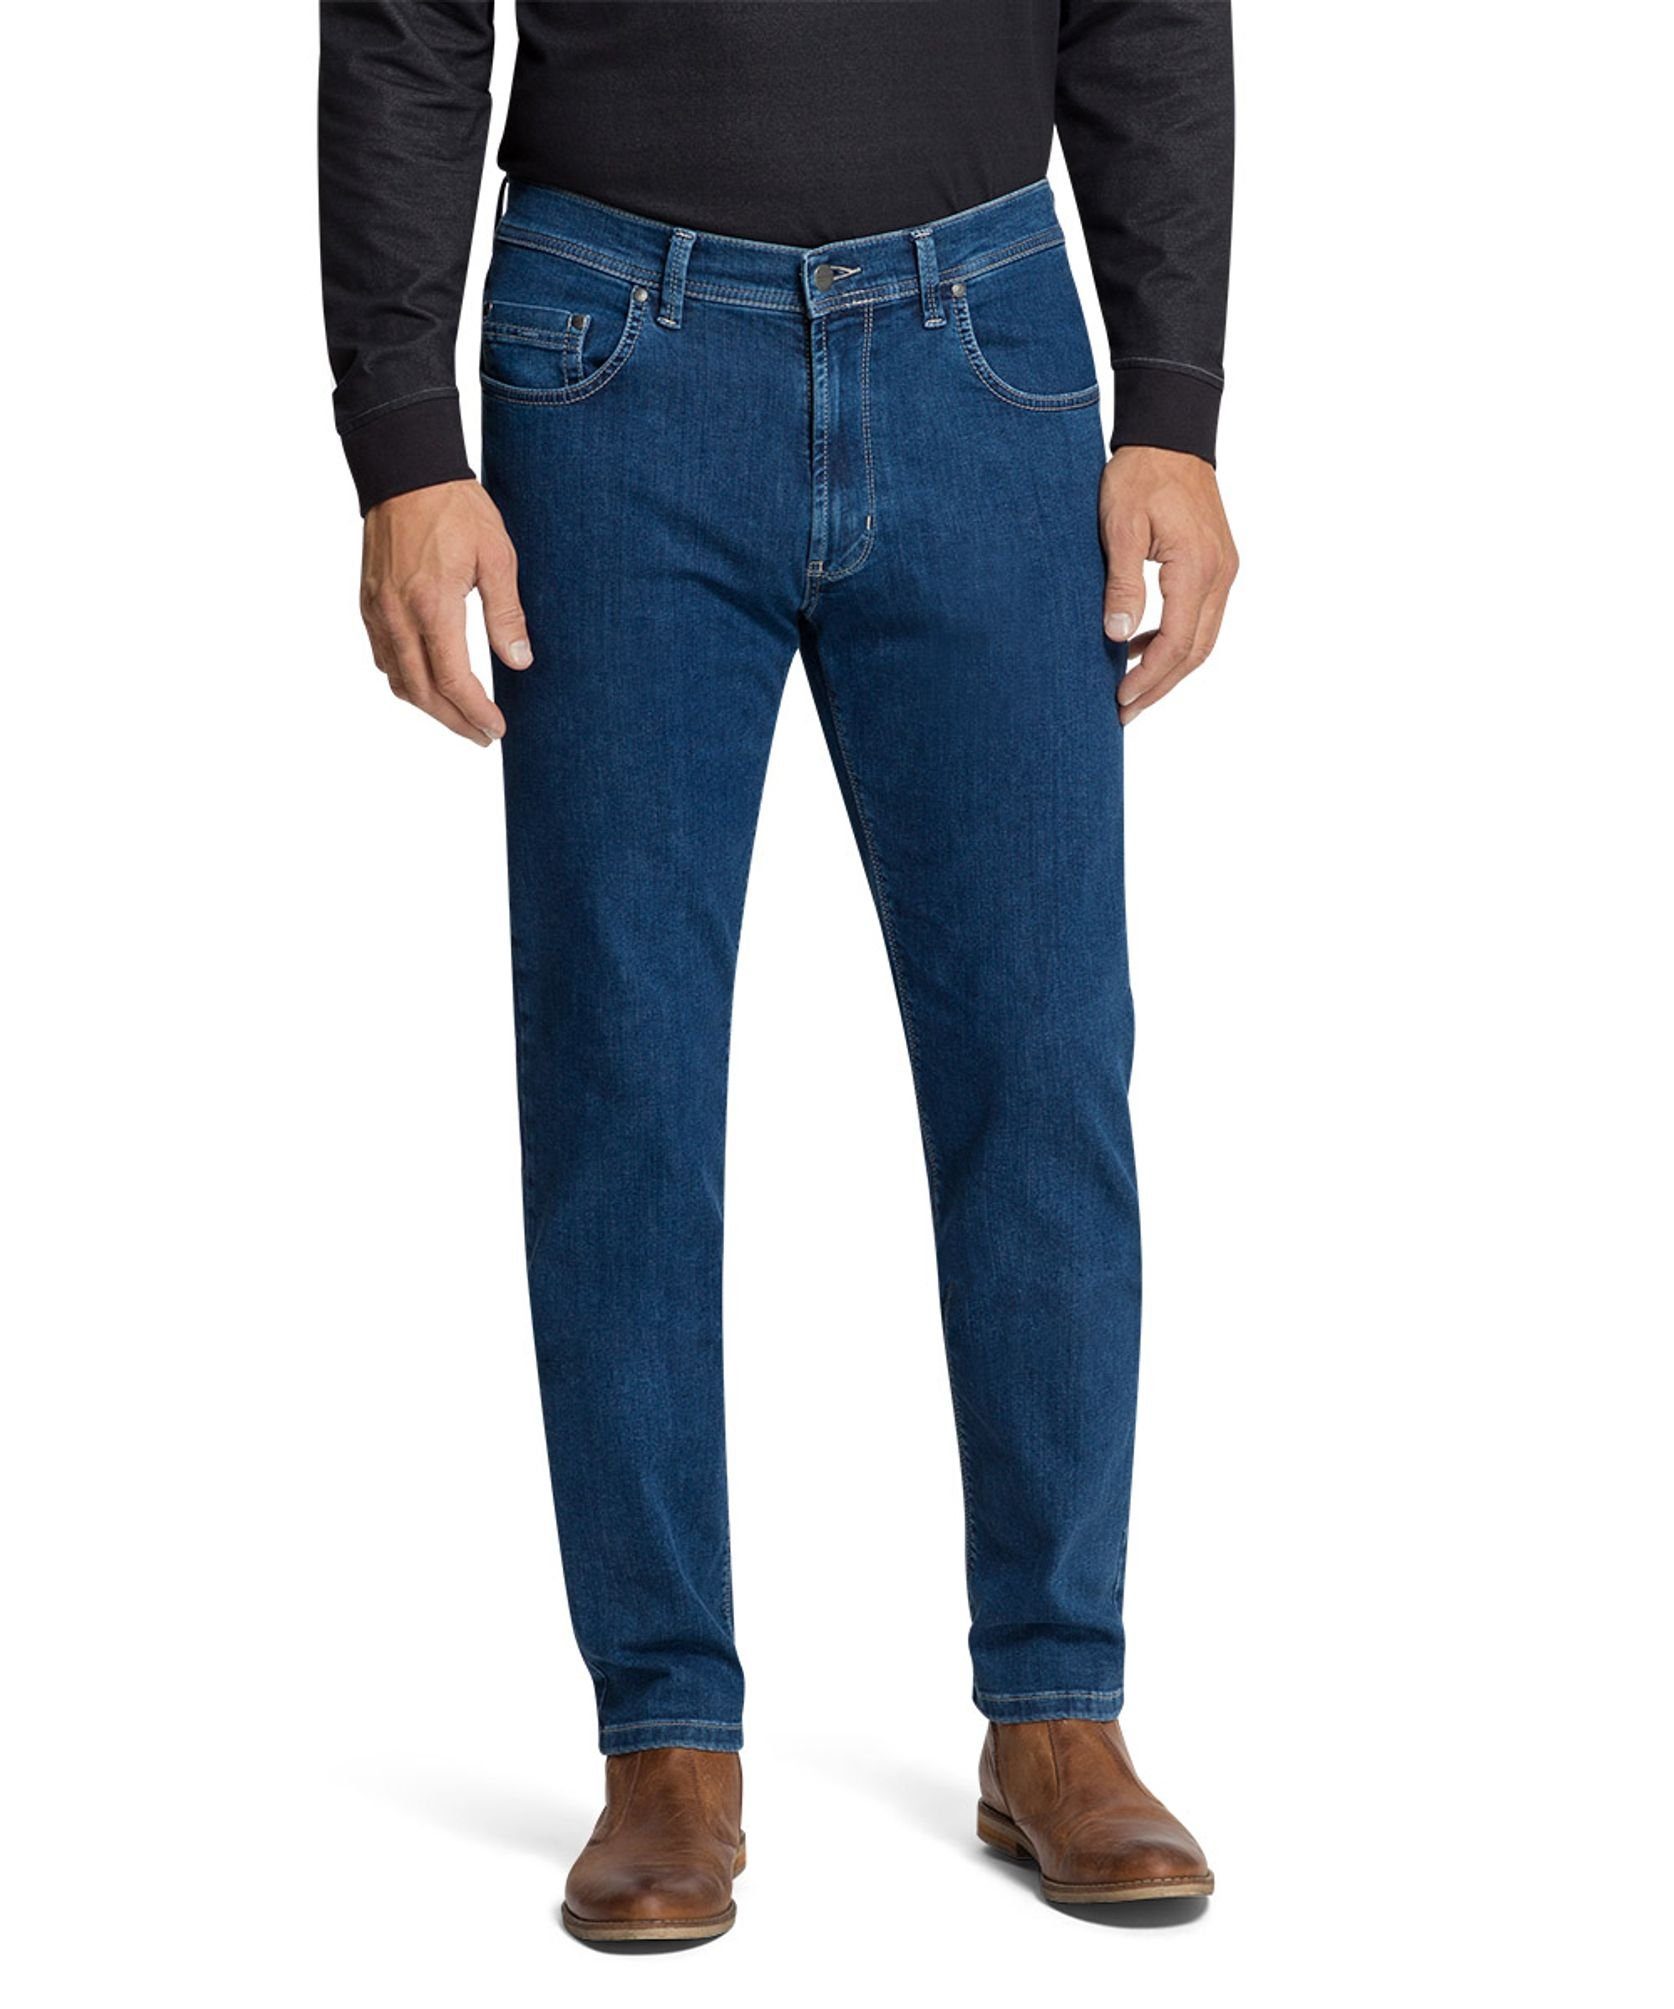 Authentic (6821) 16801.6588 Pioneer blue 5-Pocket-Jeans P0 Jeans stonewash hohe Flexibilität